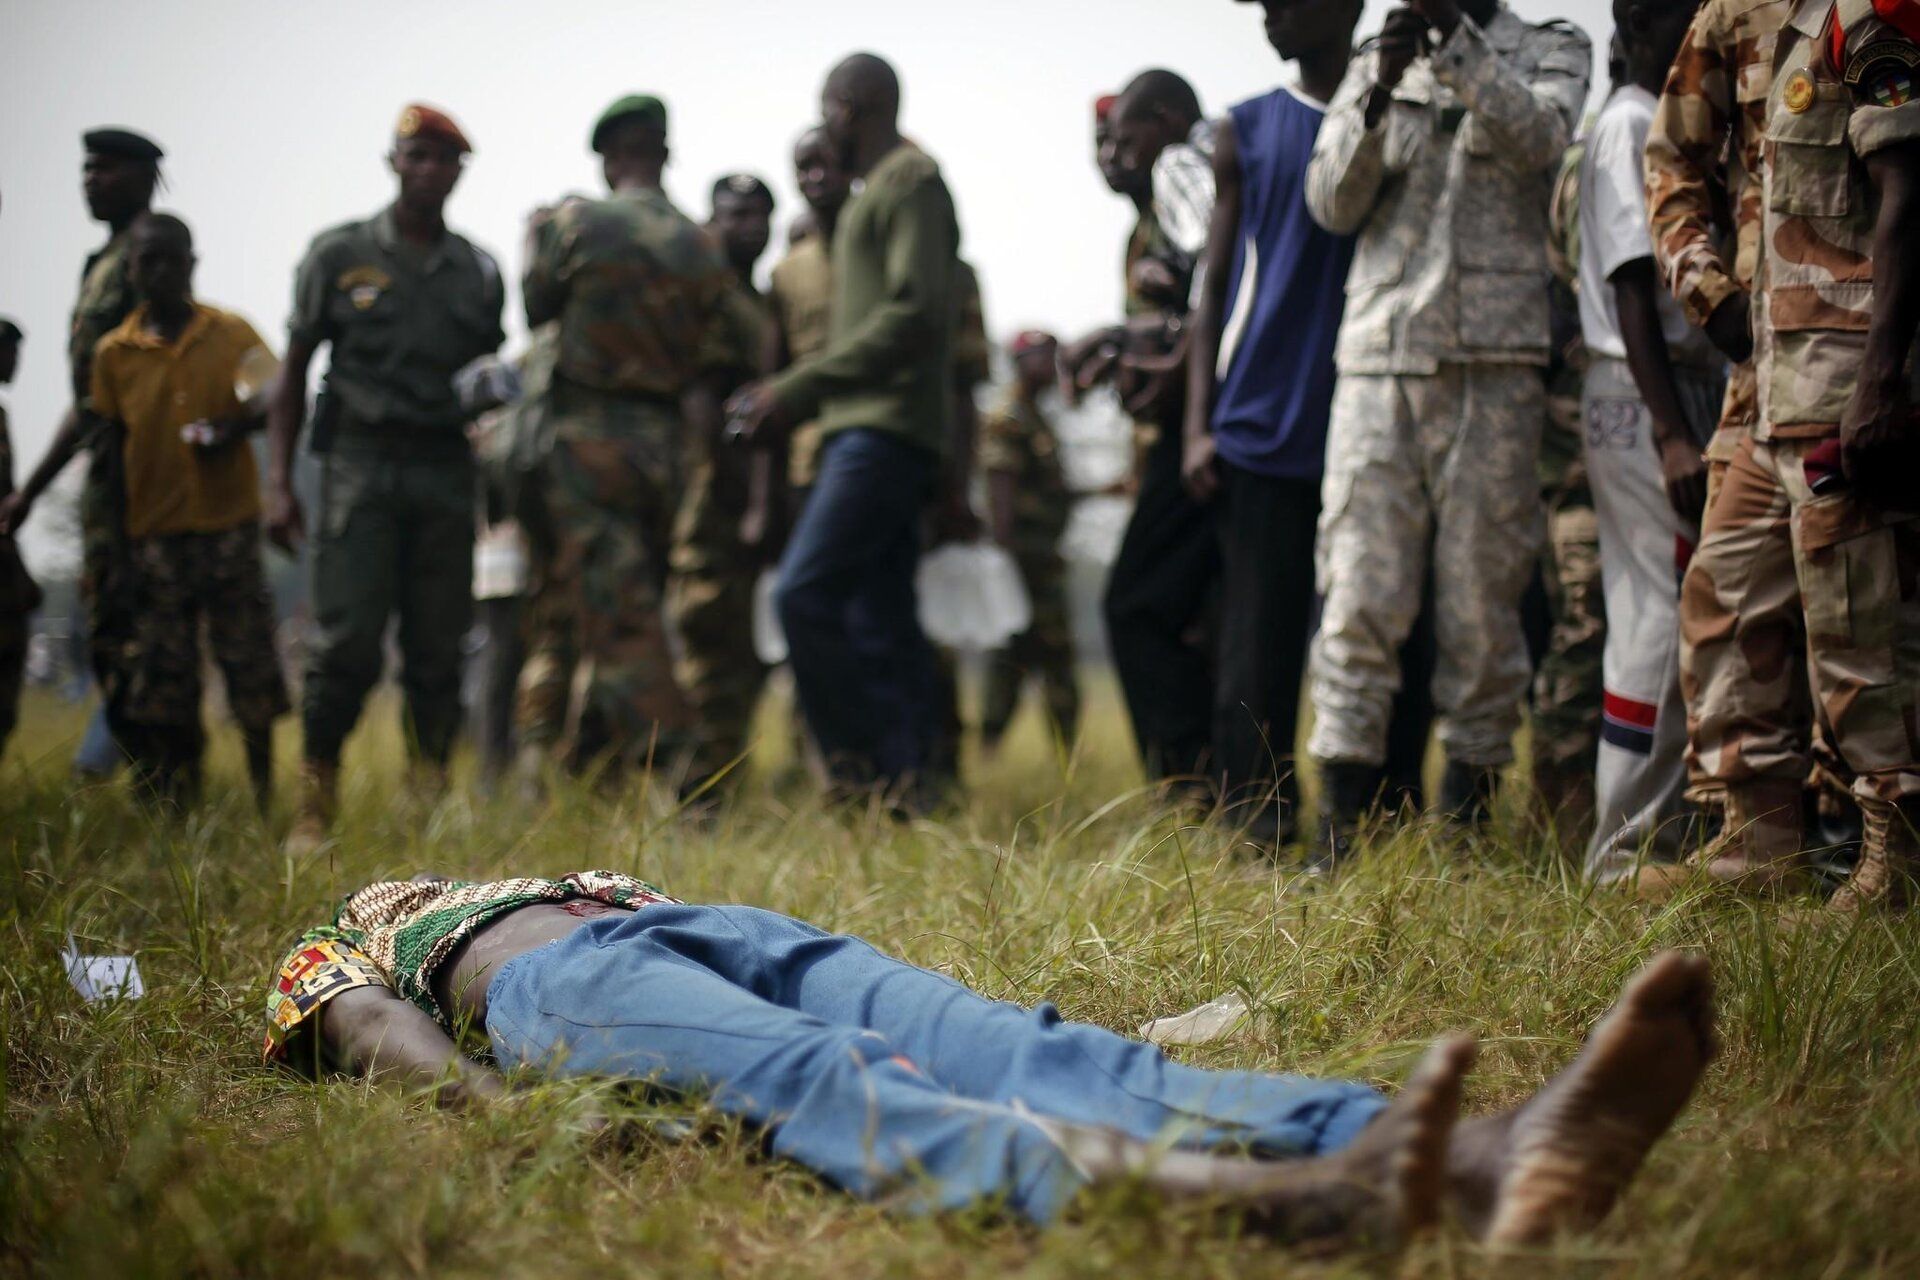 la-fg-wn-central-african-republic-lynching-201-001.jpg